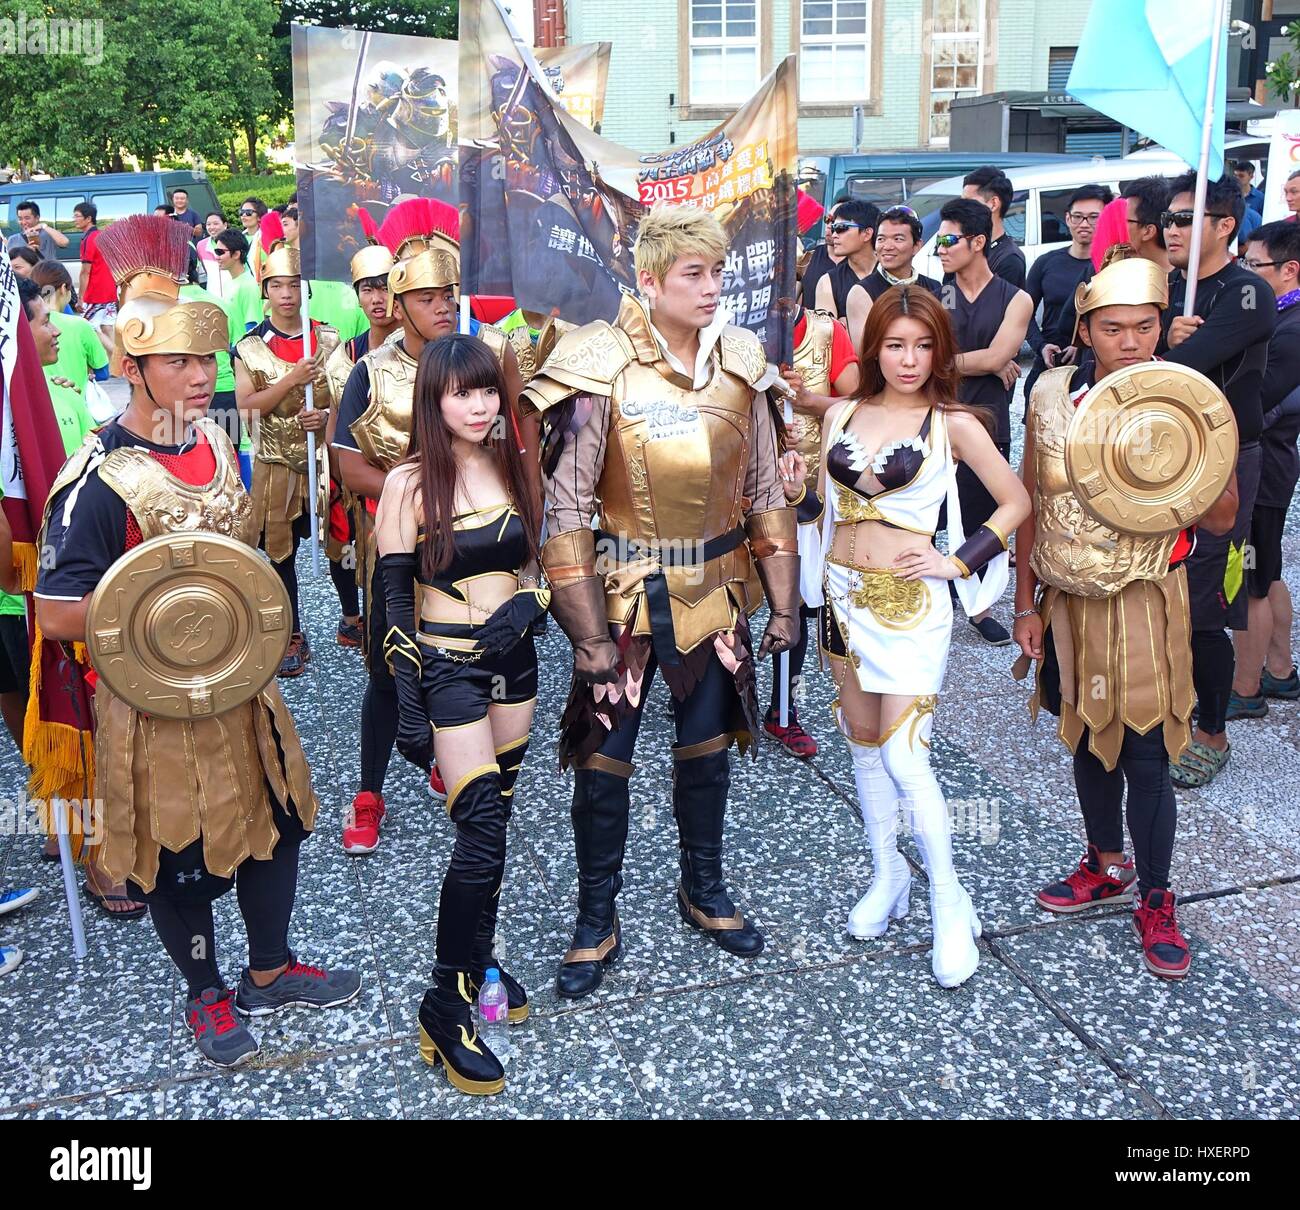 KAOHSIUNG, TAIWAN - Le 17 juin 2015 : les acteurs habillés en costumes de fantaisie de promouvoir l'application mobile jeu de stratégie, choc des rois lors d'un événement public. Banque D'Images